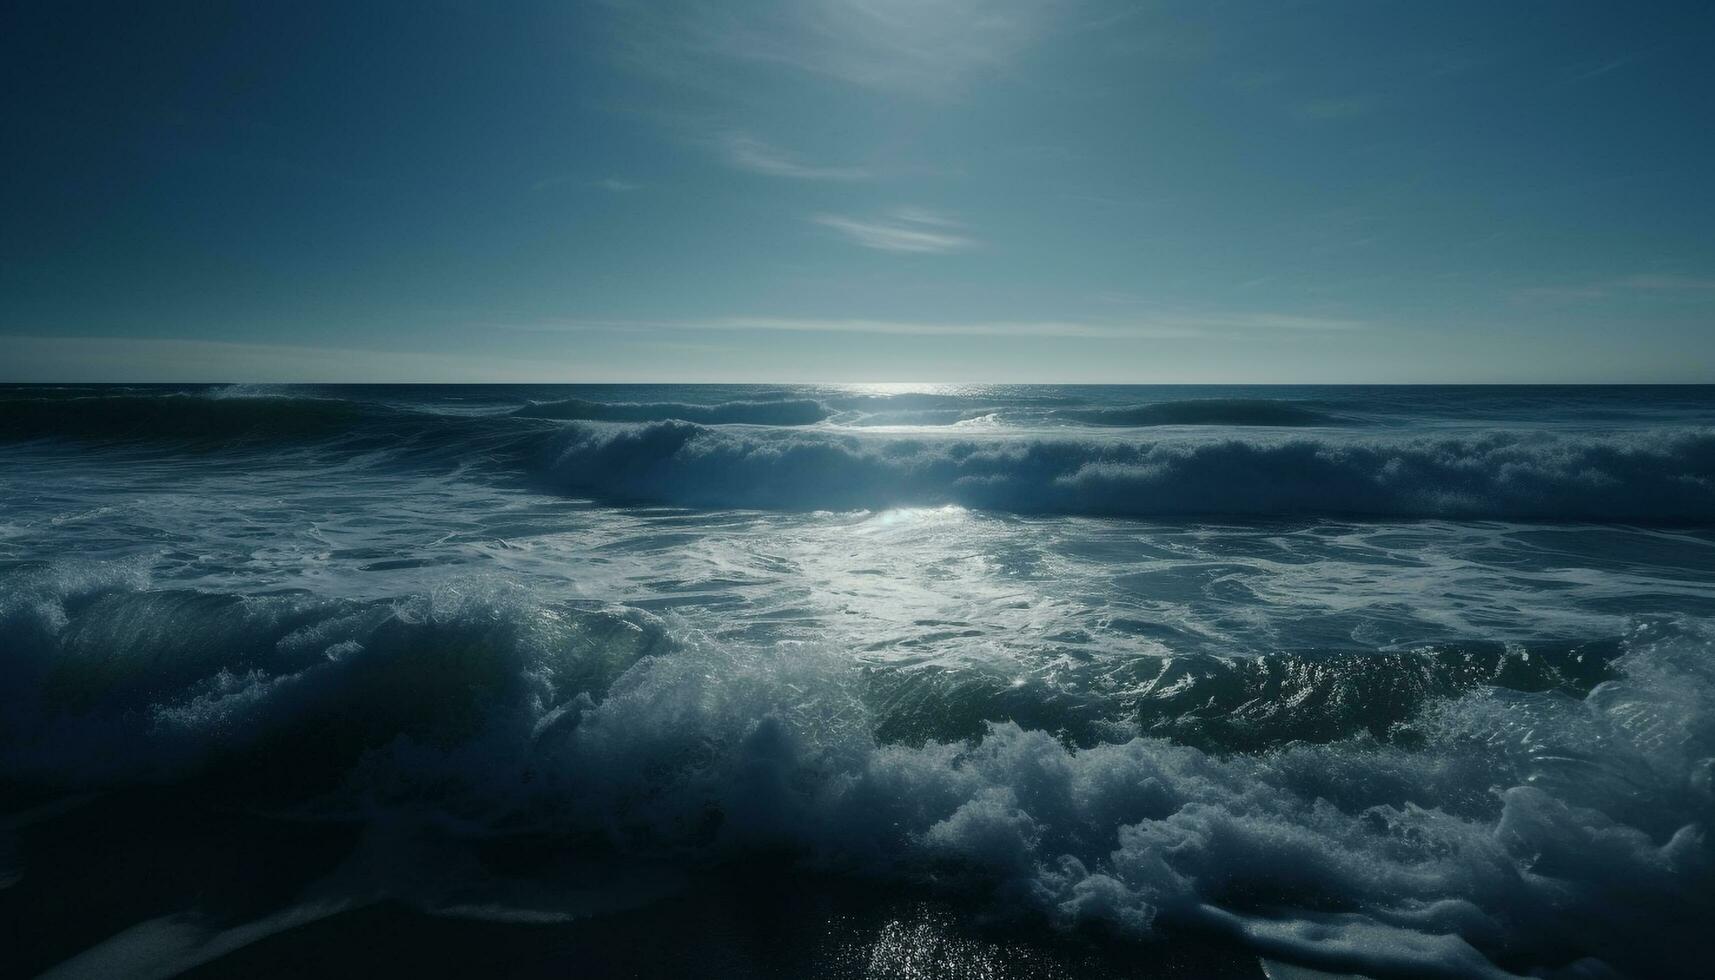 Dom conjuntos en tranquilo marina, olas estrellarse generado por ai foto